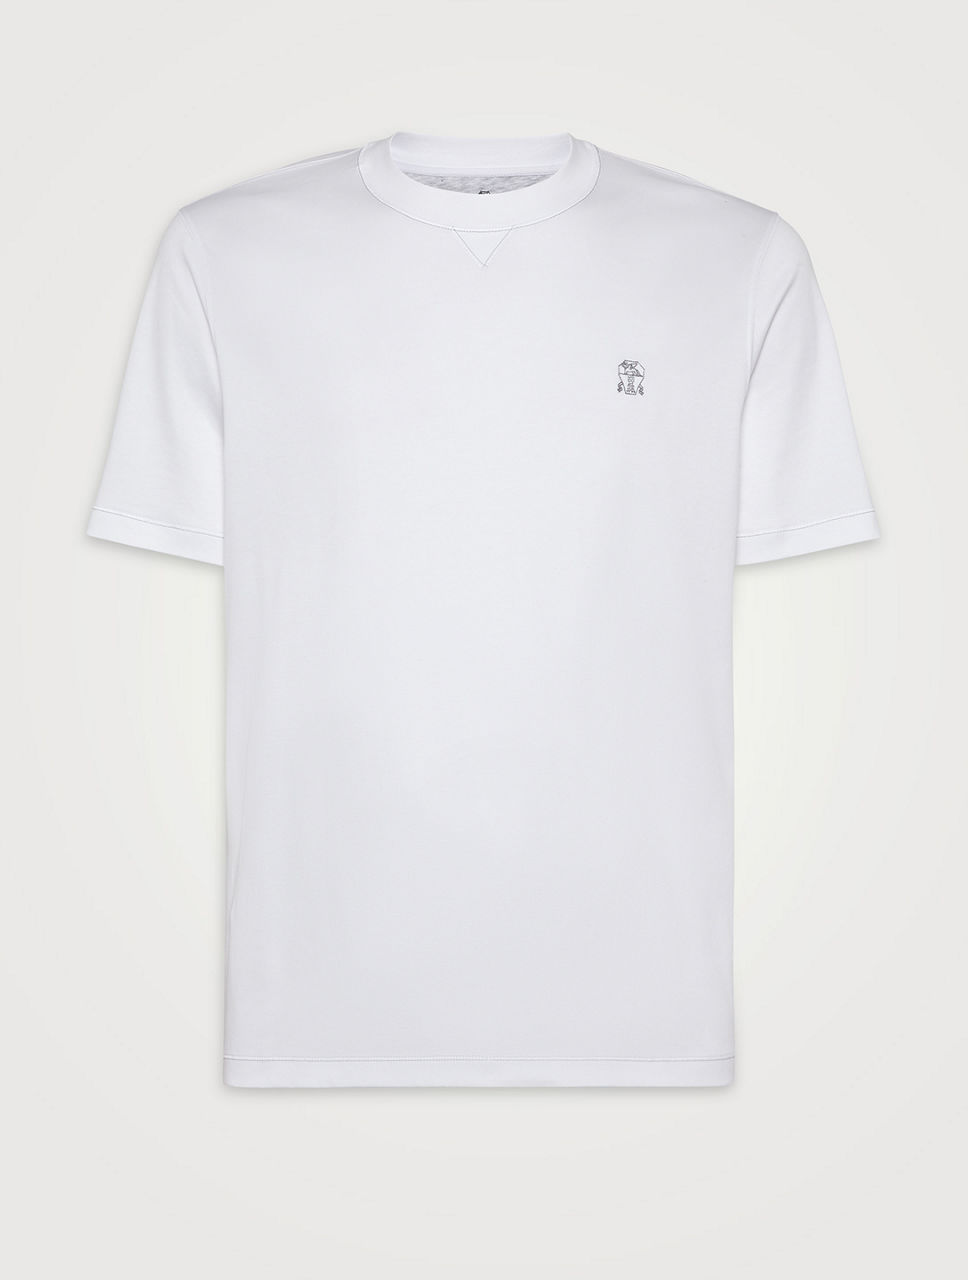 BRUNELLO CUCINELLI Cotton T-shirt With Logo | Holt Renfrew